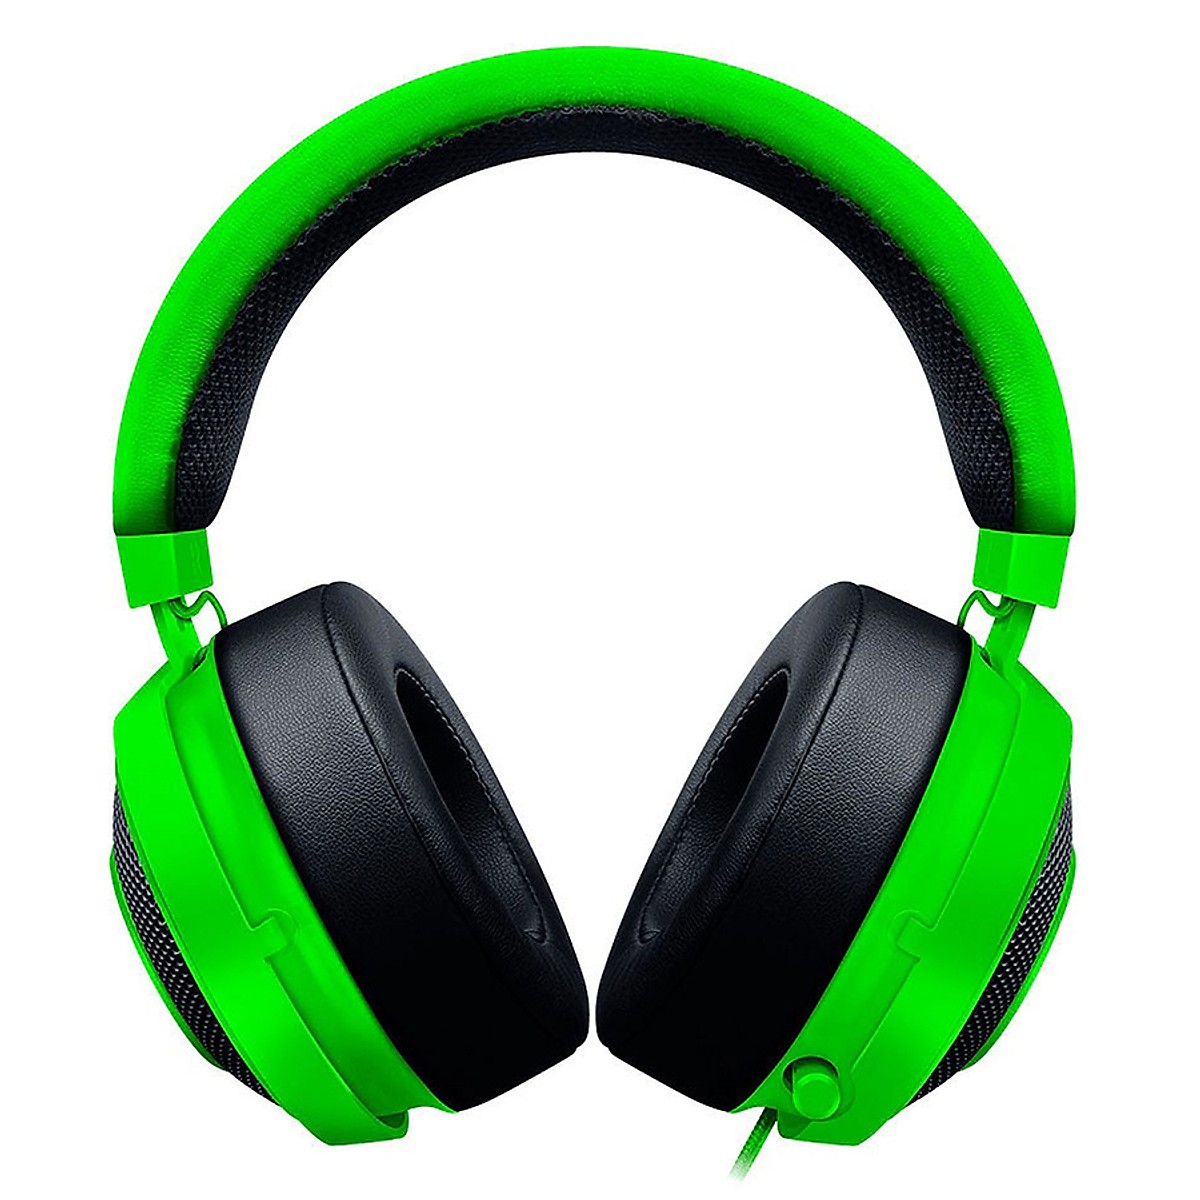 Tai nghe Razer Kraken Tournament Edition Gaming Headset – Black/Green - Hàng chính hãng